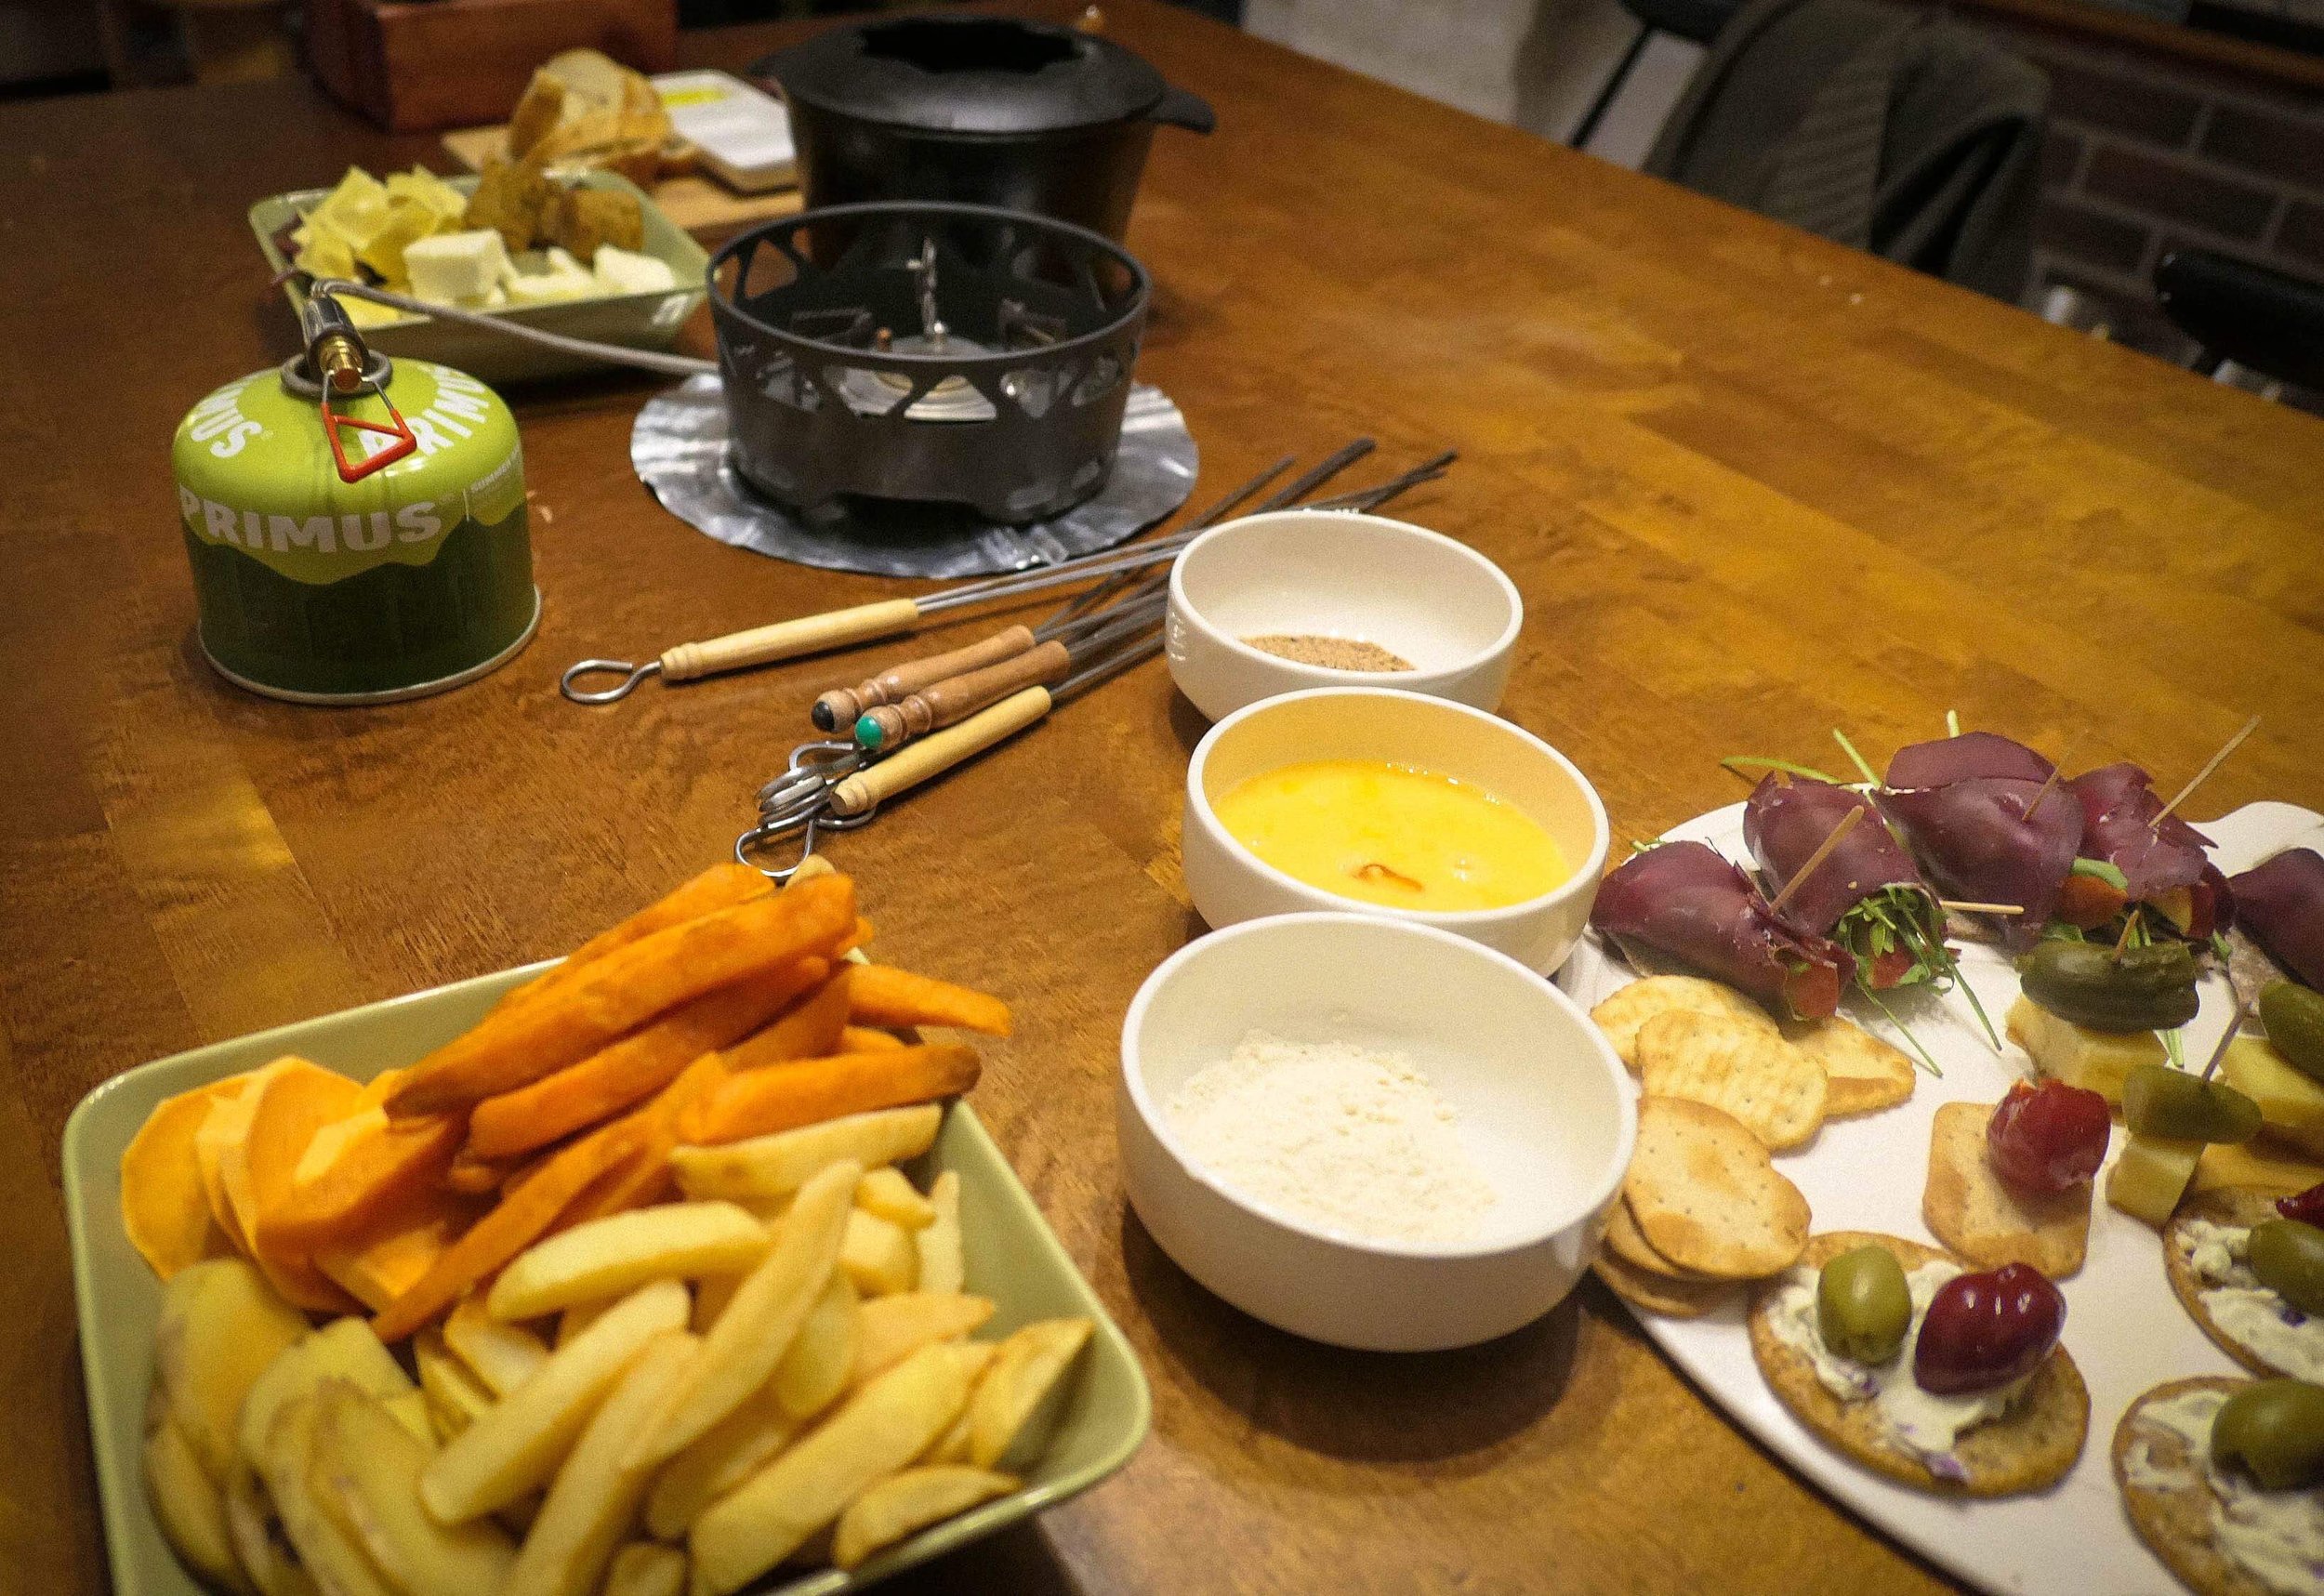 Kotini ruokapöydällä fondue-pataa lämmitetään retkikeittimellä ja testissä on mahdollisia juttuun tulevia herkkuja.